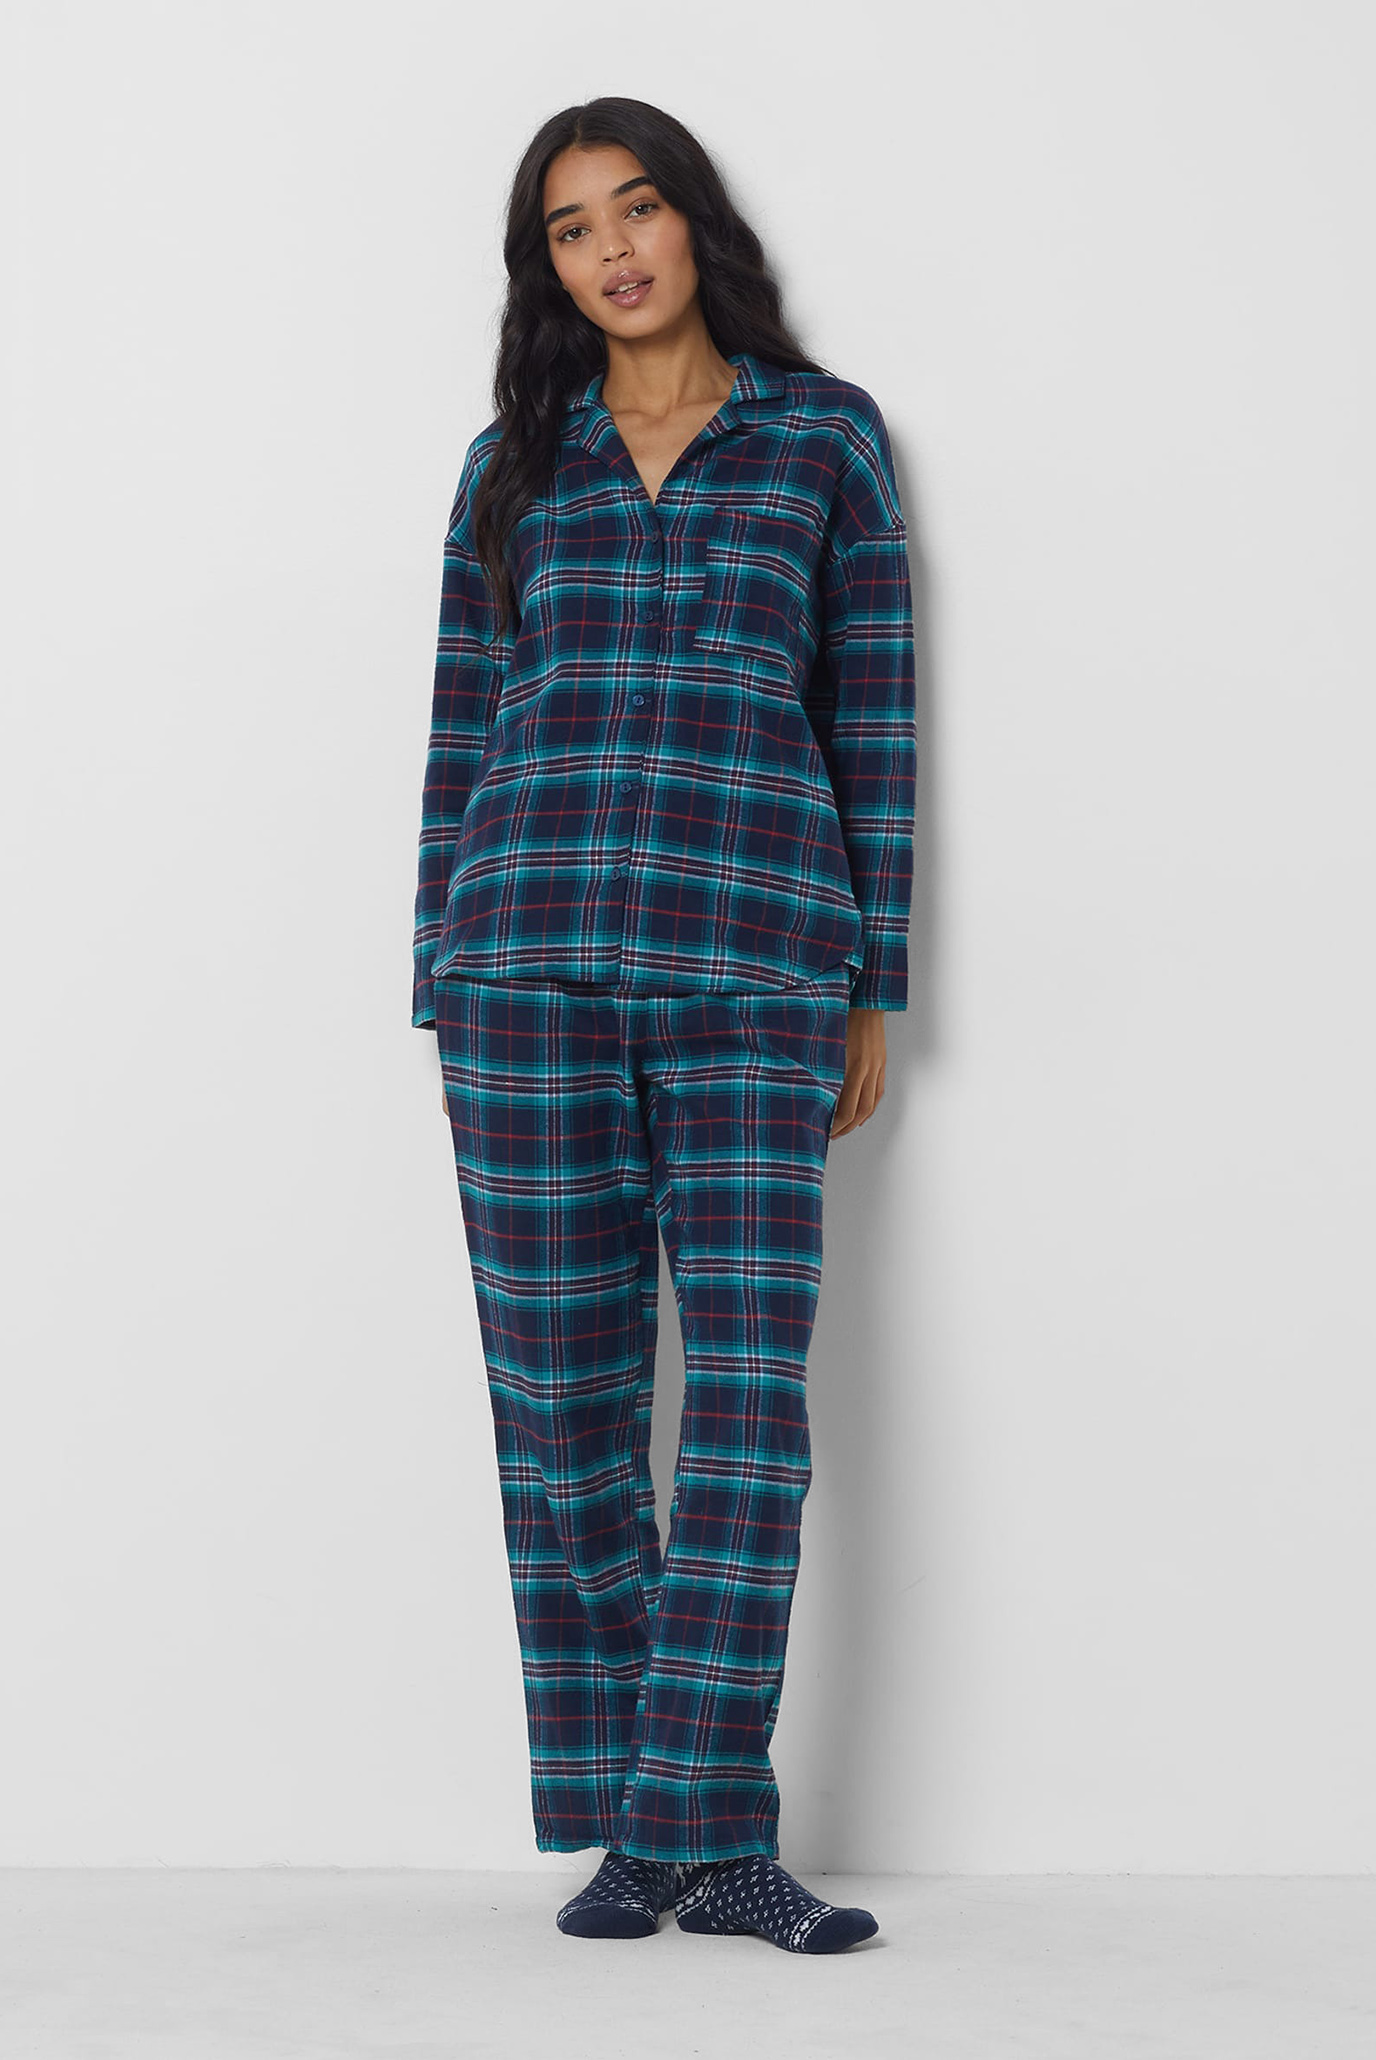 Женская темно-синяя пижама в клетку (рубашка, брюки, носки) JADDEN 1